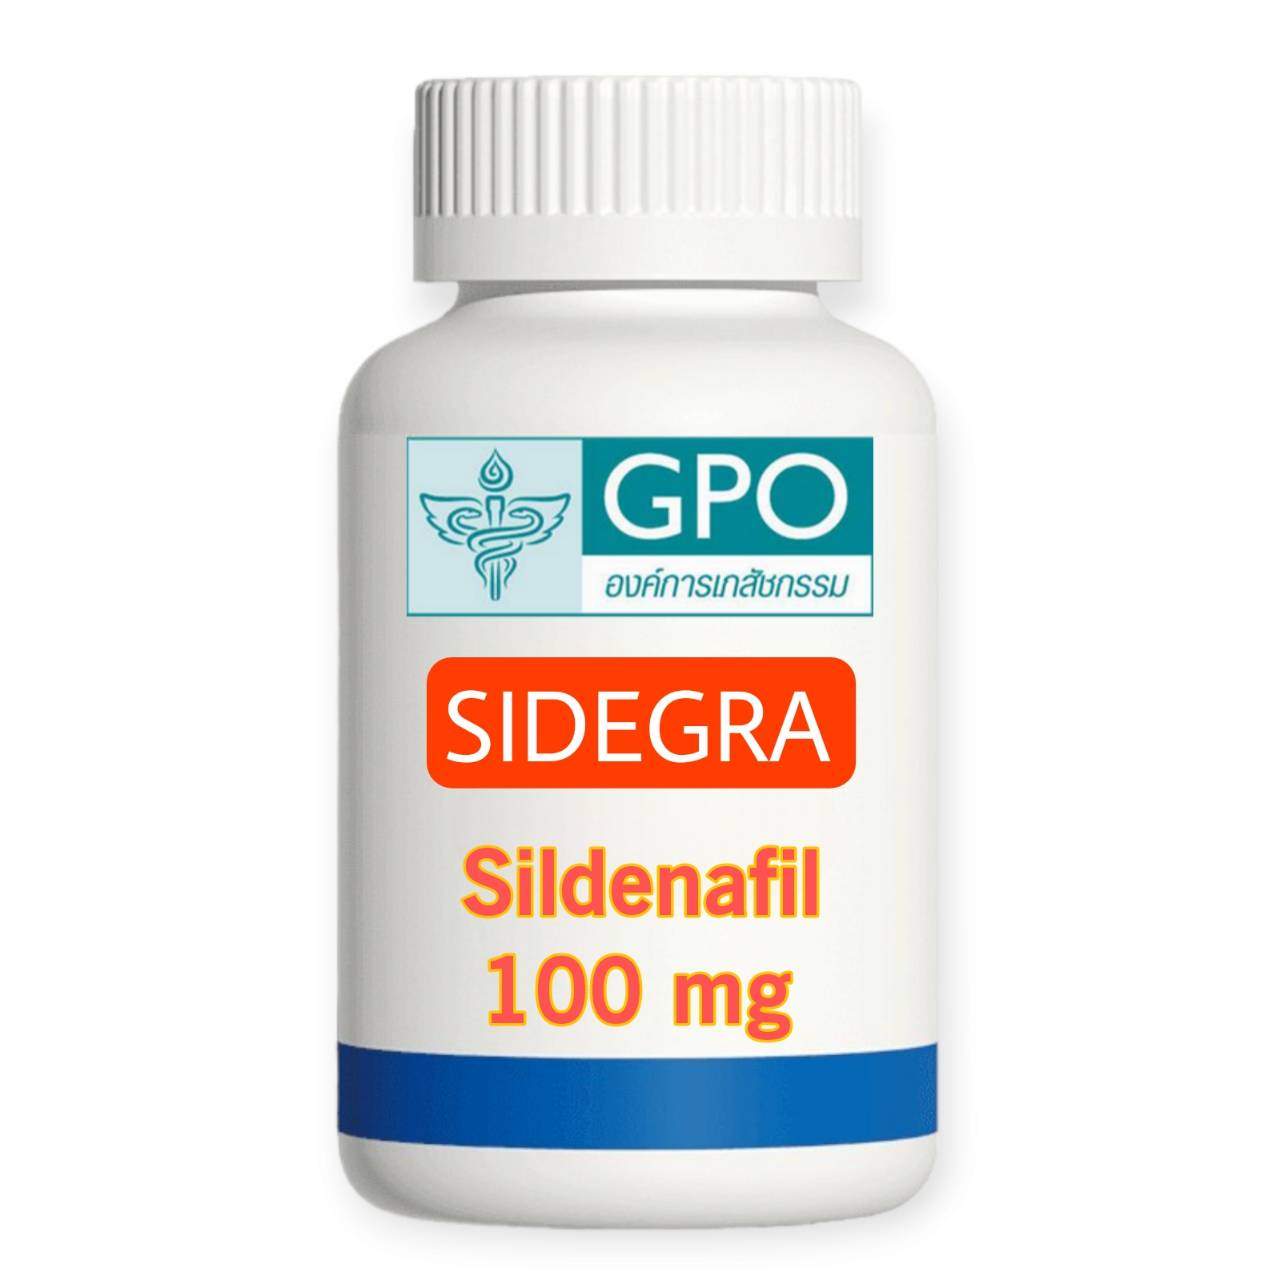 sidegra-sildenafil 100 mg